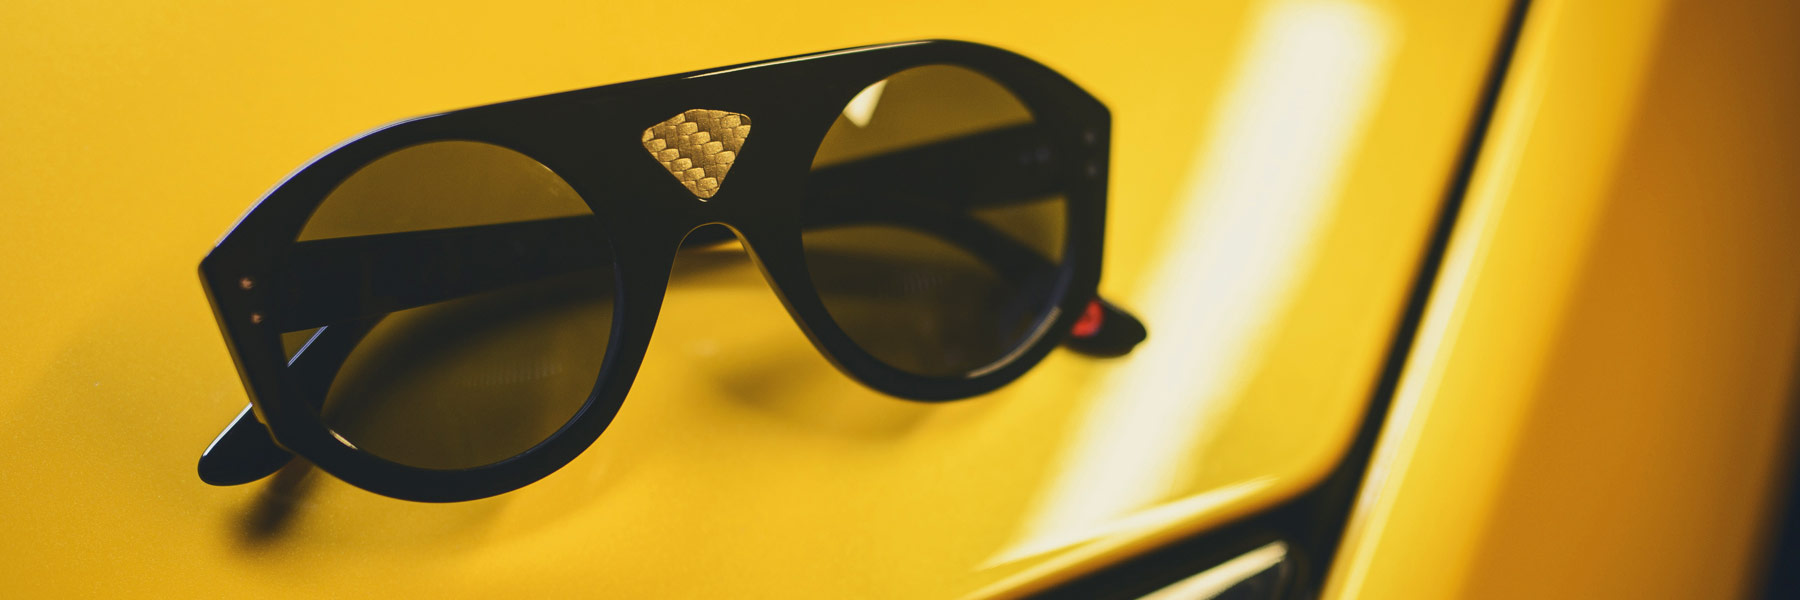 Wilde-Sunglasses-Occhiali-Lambo-driver-Collection-Collezione-2015-2016-Barcelona_Sunglasses_design_by_rob_adalierd2.jpg